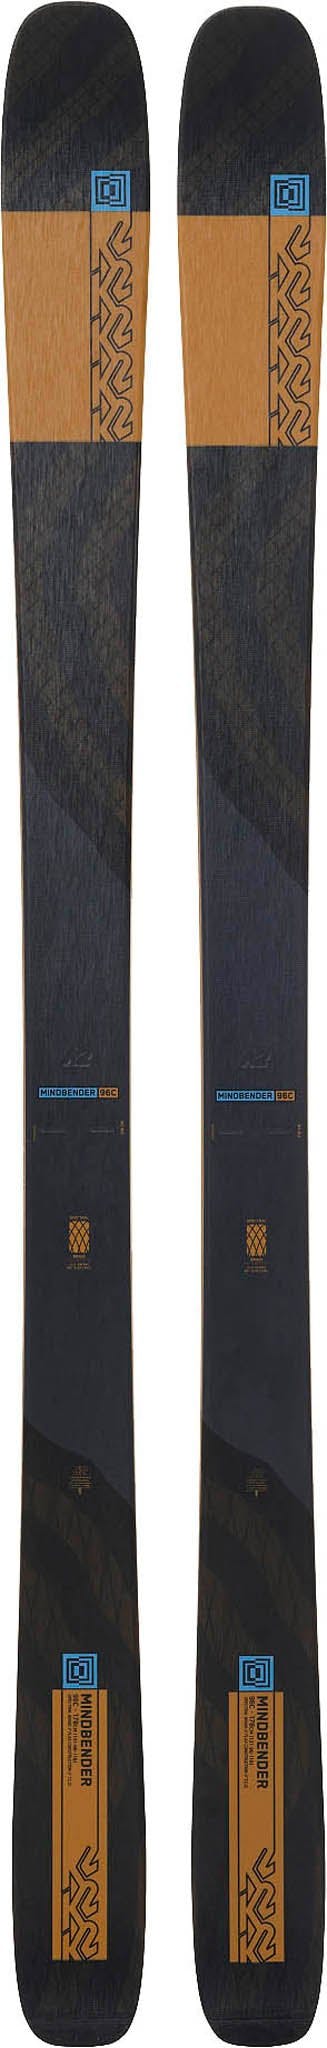 Product image for Mindbender 96 C Ski - Men's